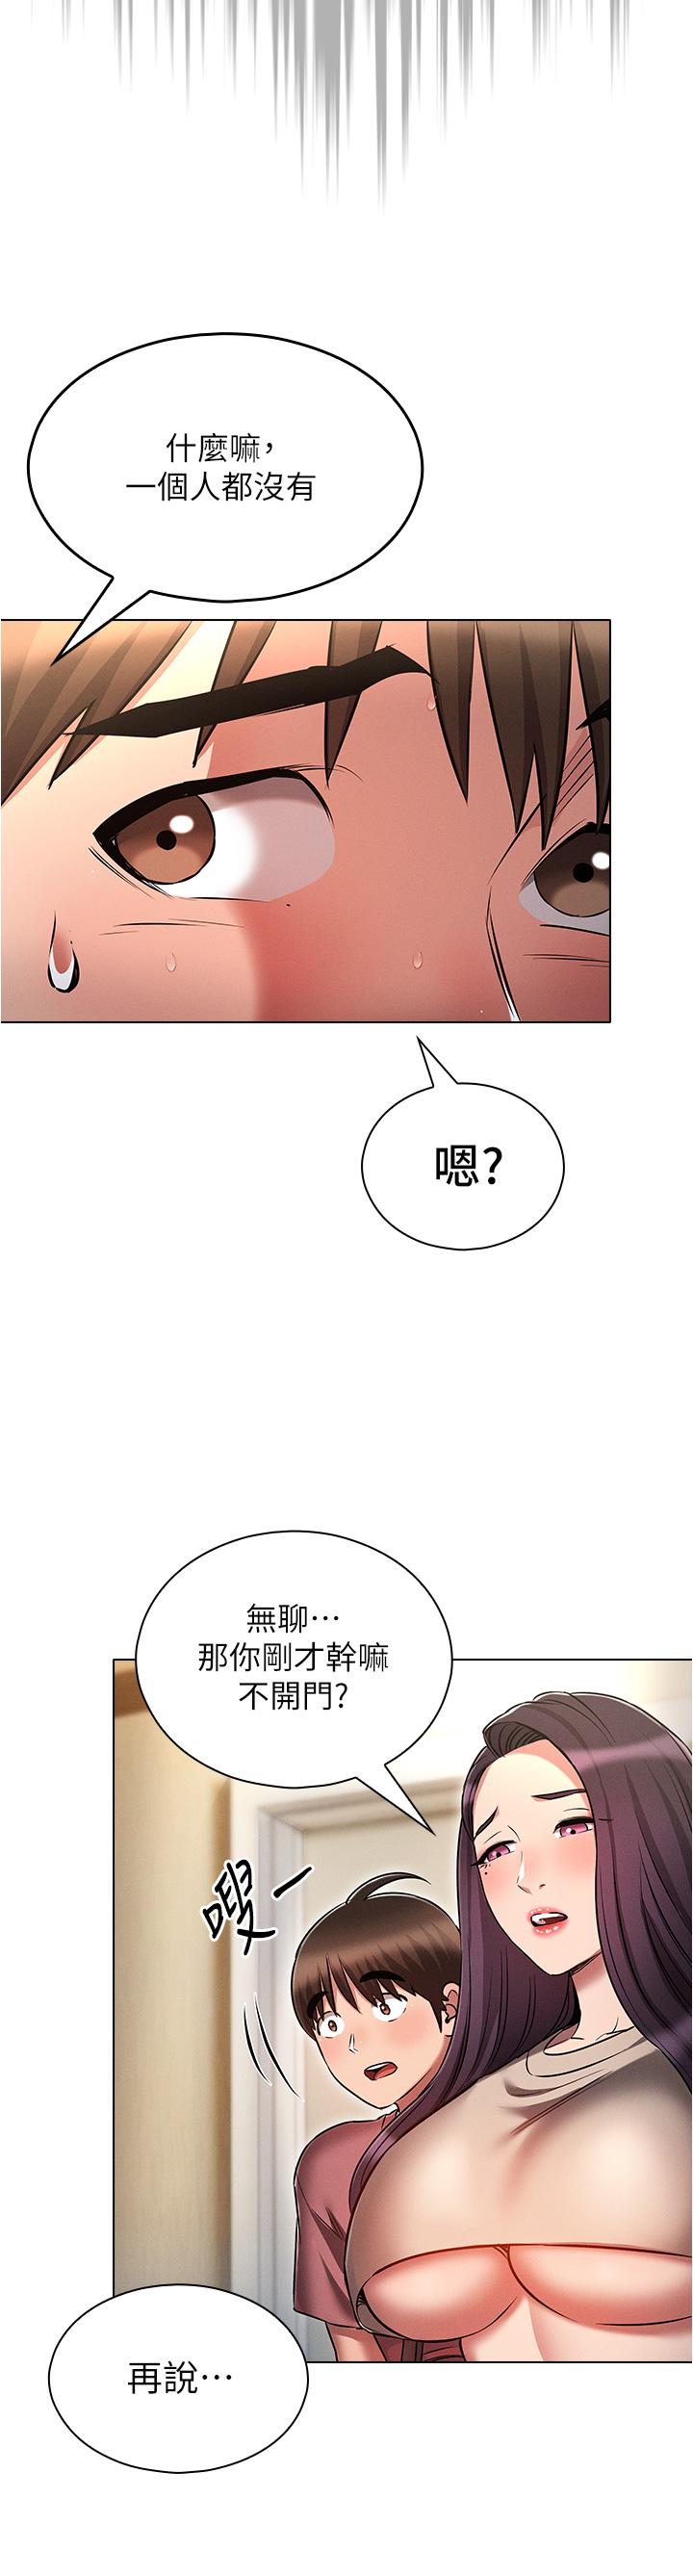 韩国污漫画 魯蛇的多重宇宙 第53话-你在家藏女人? 36